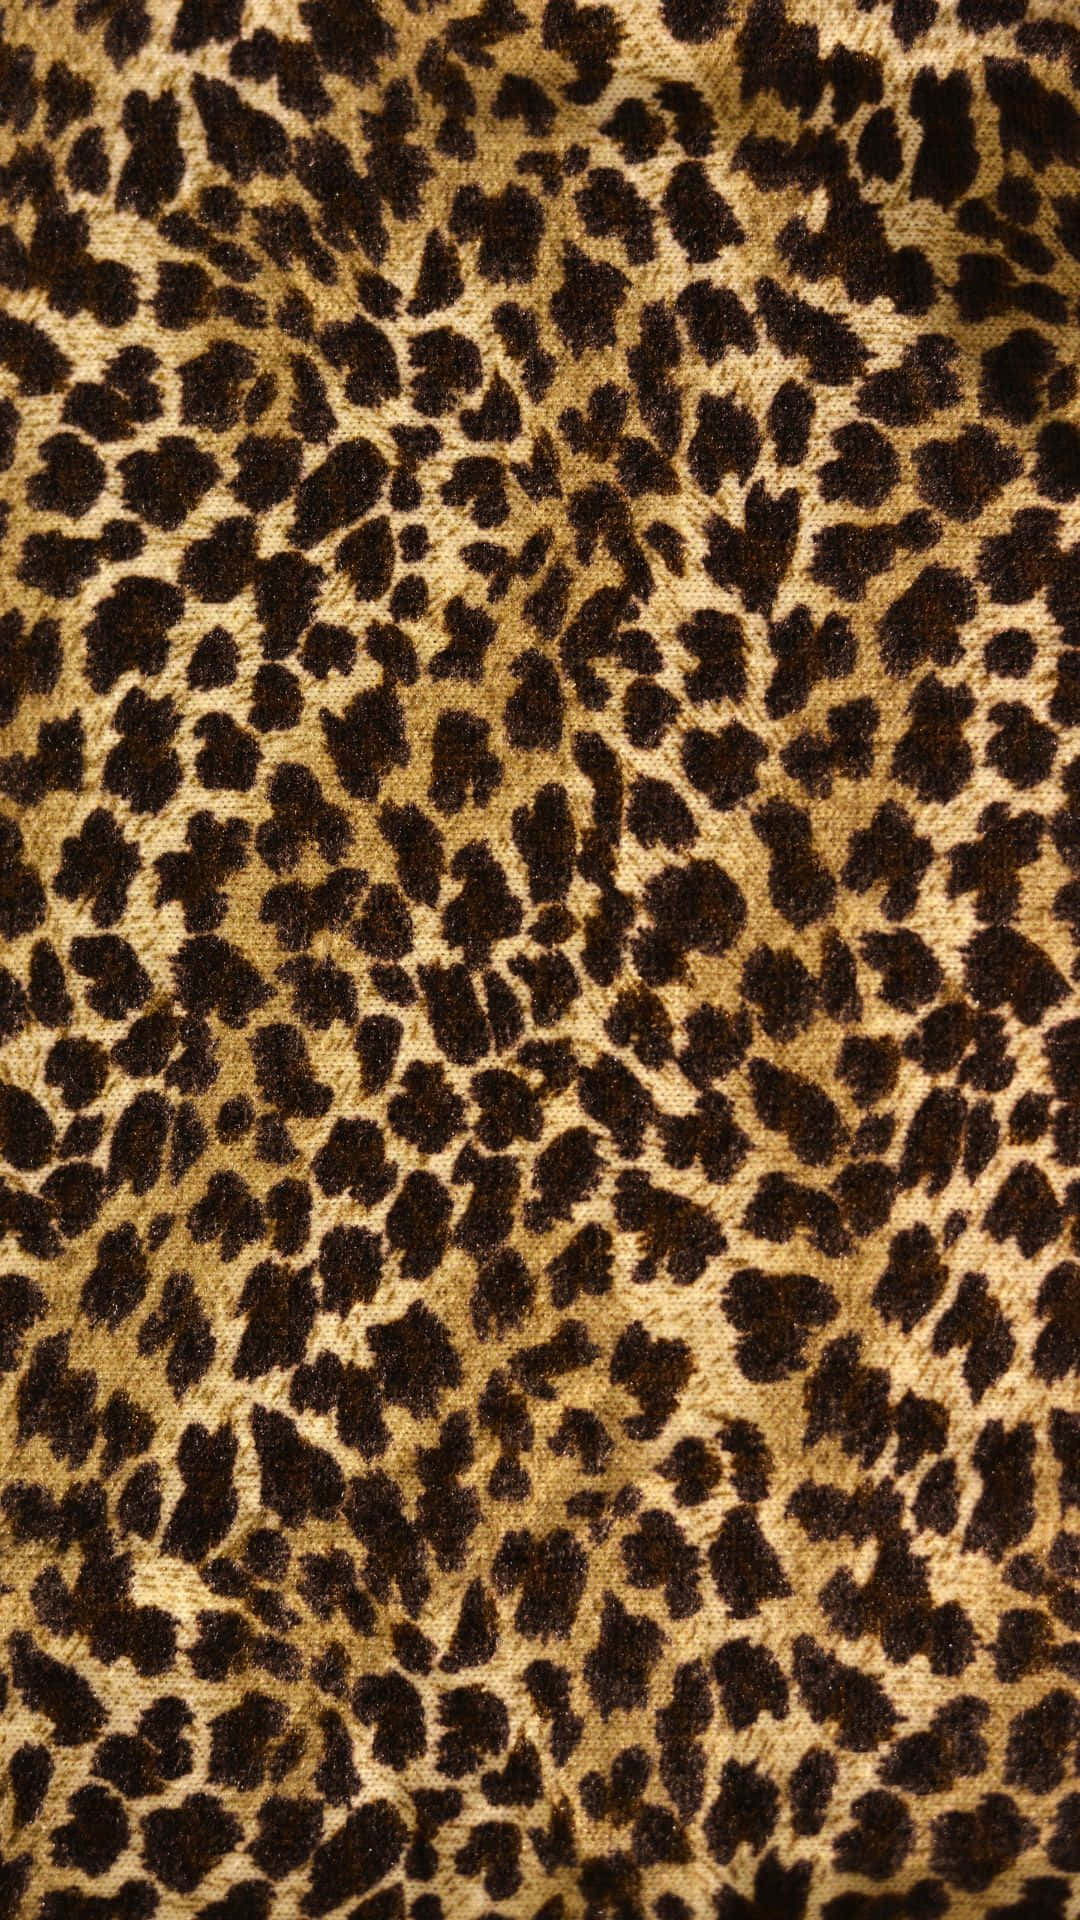 Etnærbillede Af Stof Med Leopardmønster.